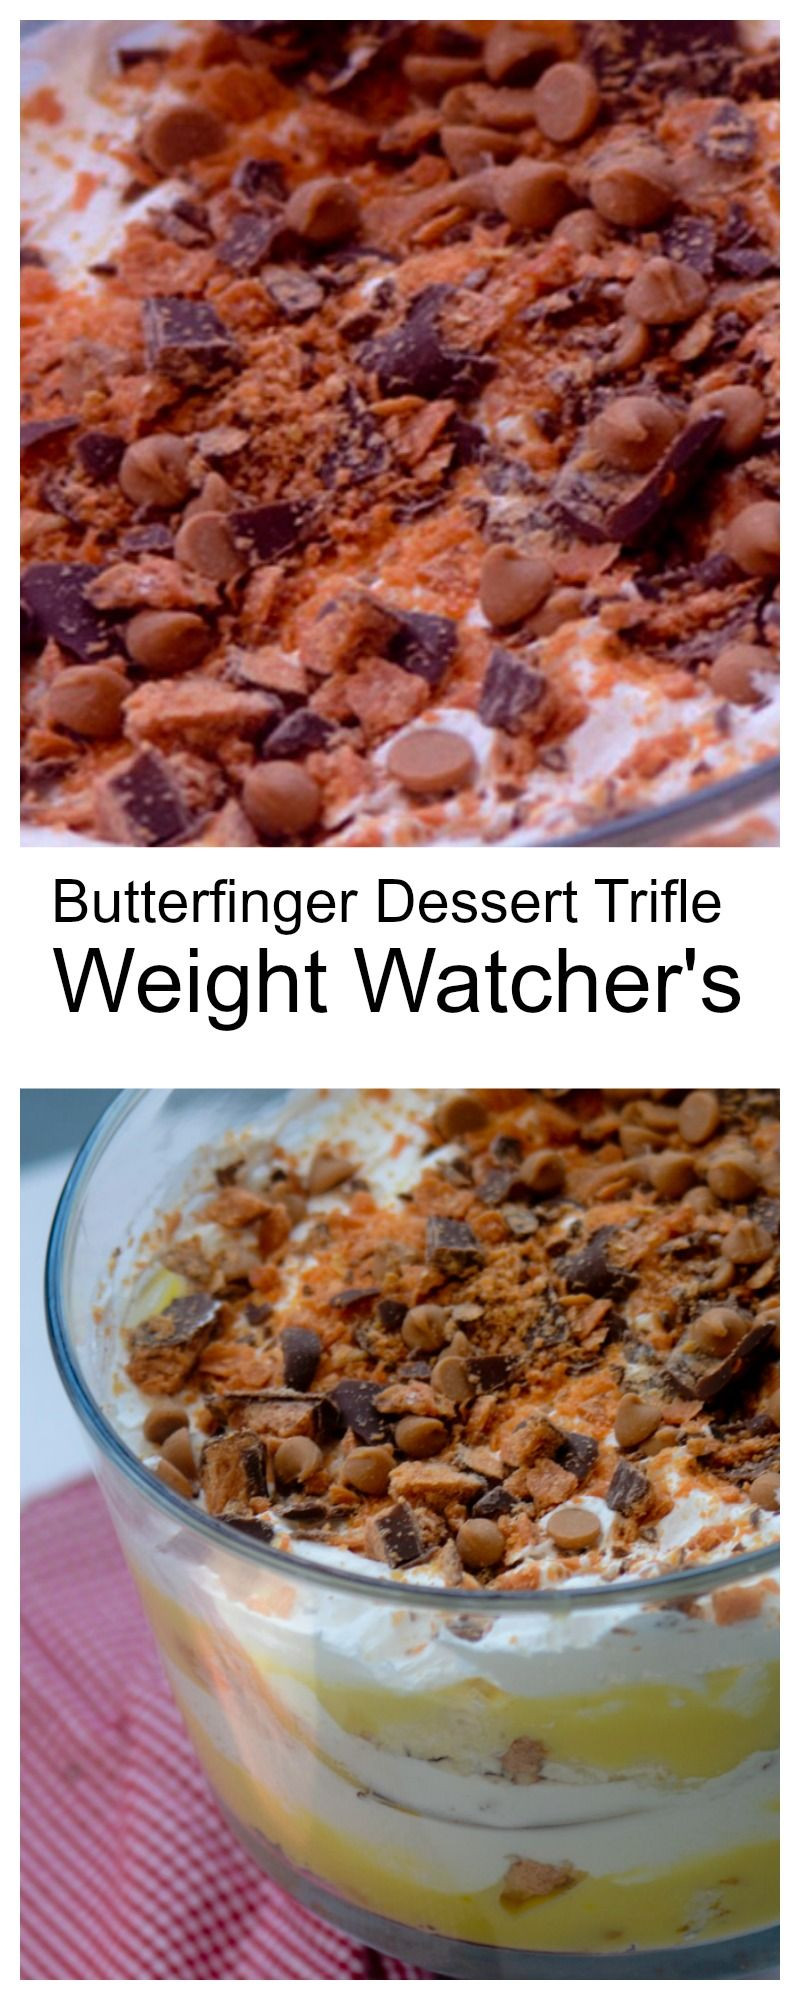 Weight Watchers Diabetic Recipes
 Weight Watcher s Butterfinger Dessert